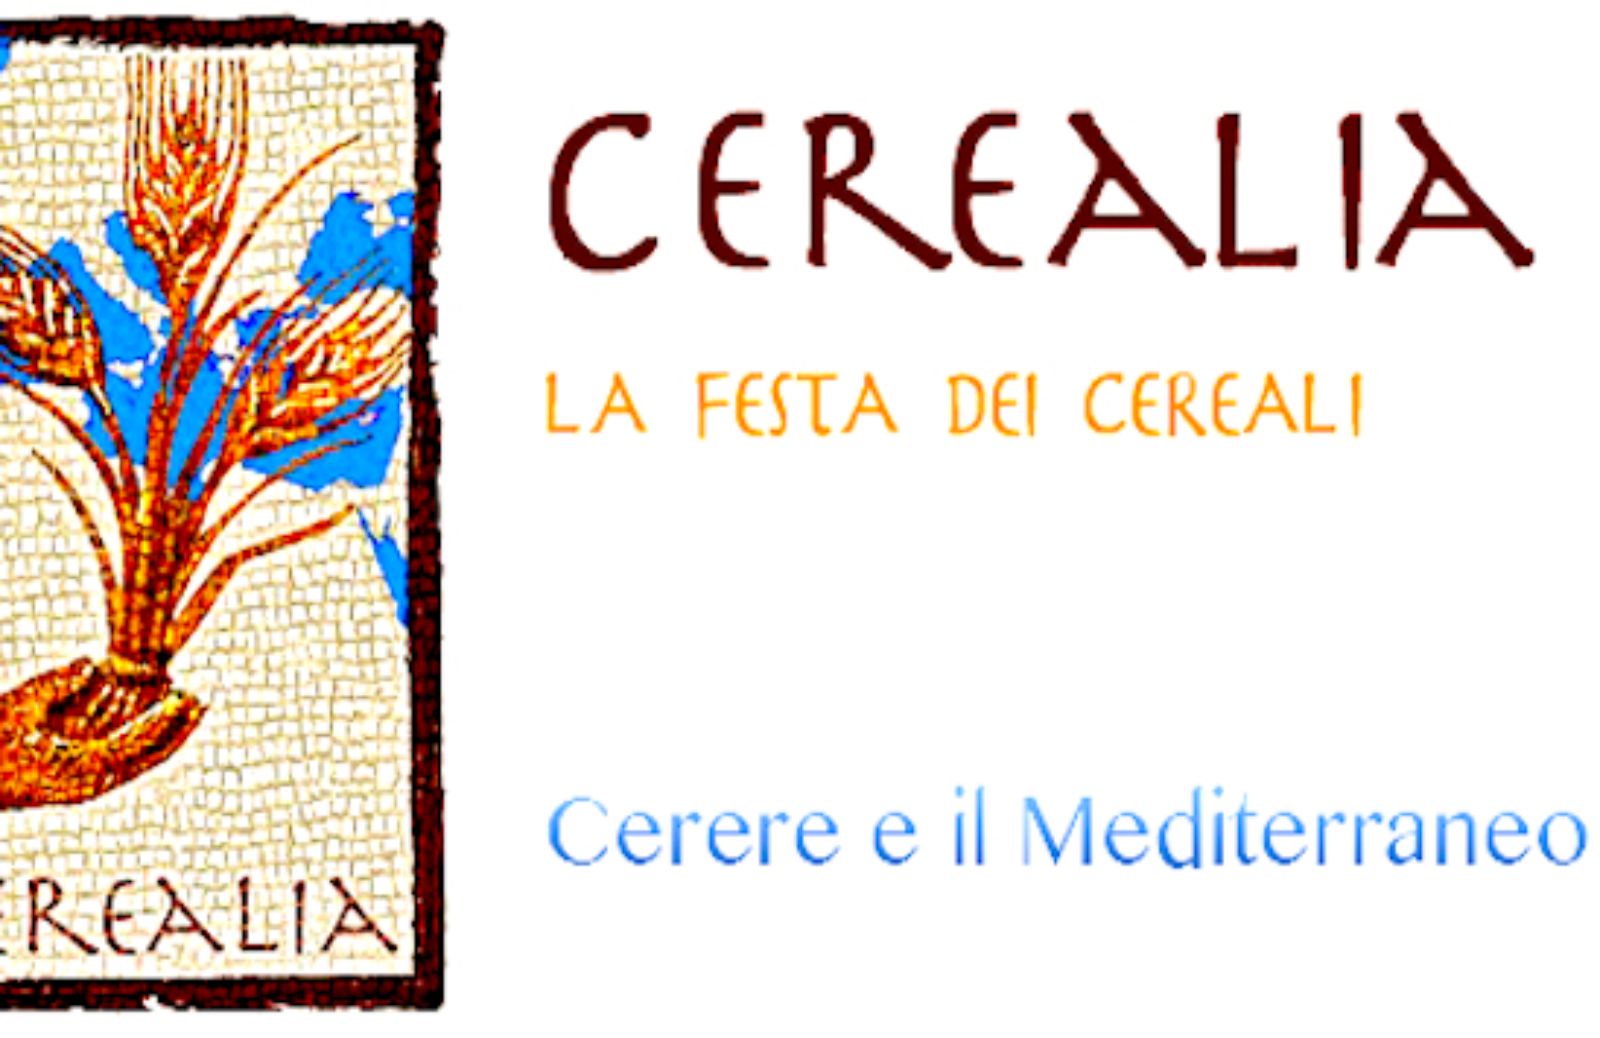 Cerealia 2014, torna la festa dei cereali